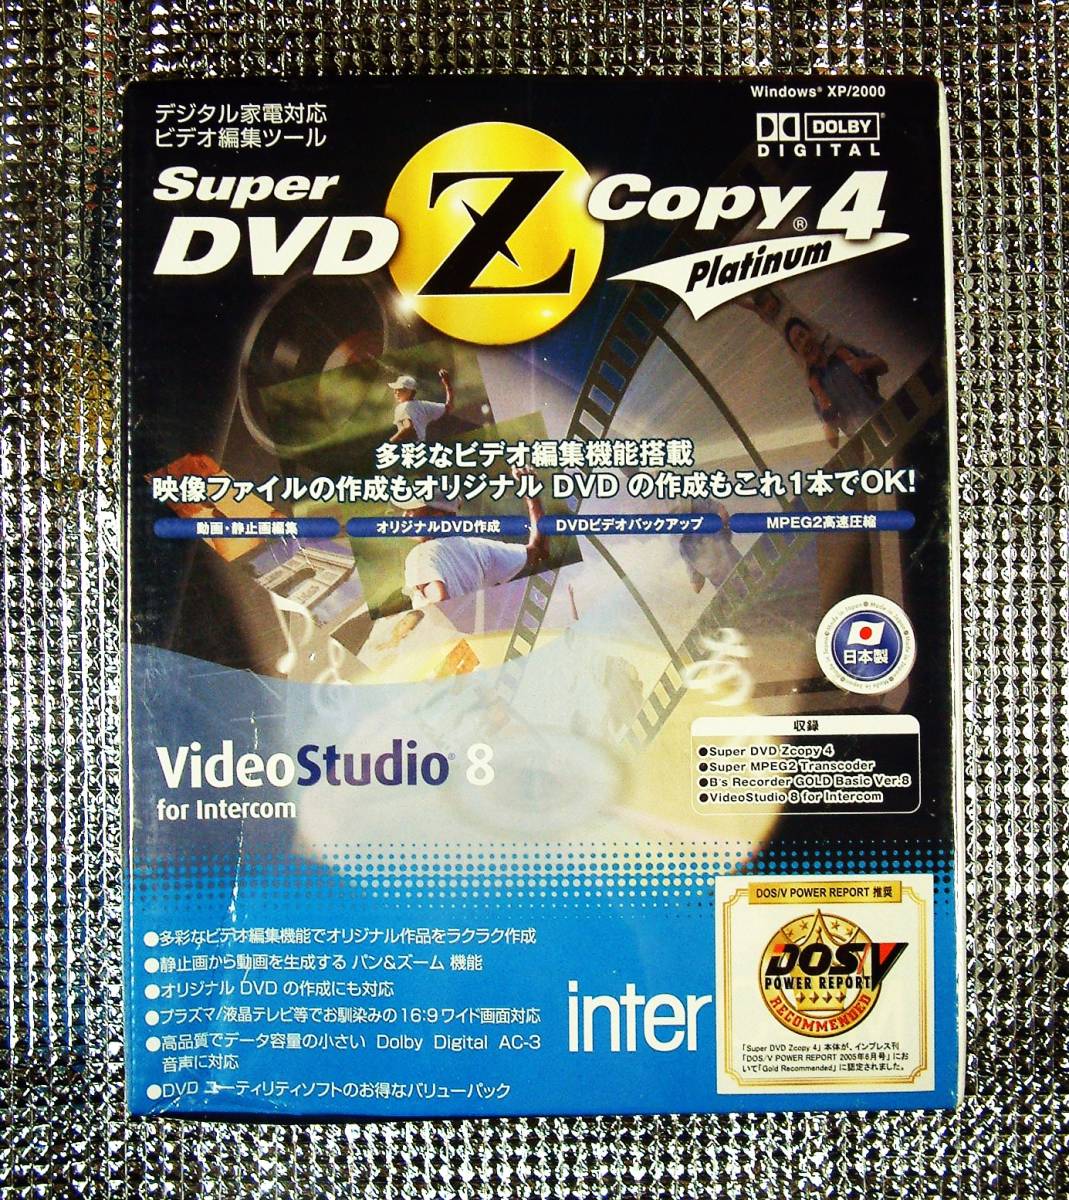 [4847] Intercom Super DVD Zcopy 4 Platinum Неокрытый Super MPEG2 Transcoder, Recorder B, Videostudio Video (редактирование, сжатие, резервное копирование)